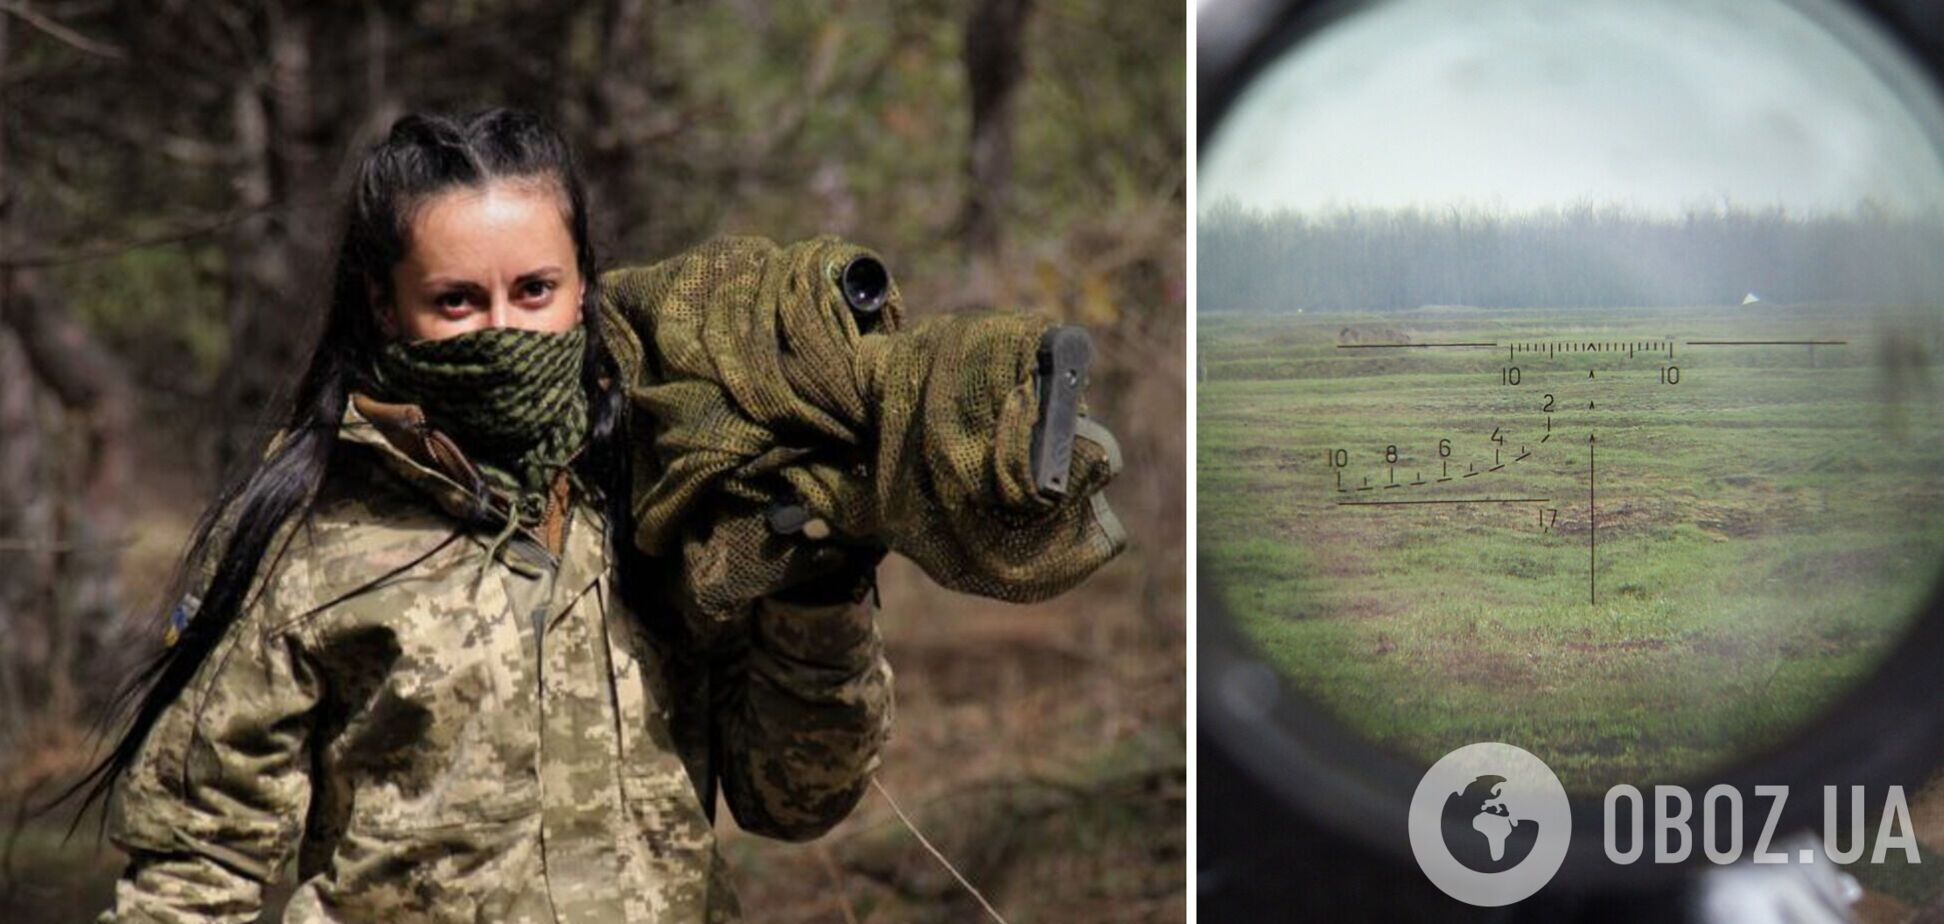 'Буду стоять до последнего': украинская снайпер 'Уголек' объяснила, почему воюет против оккупантов